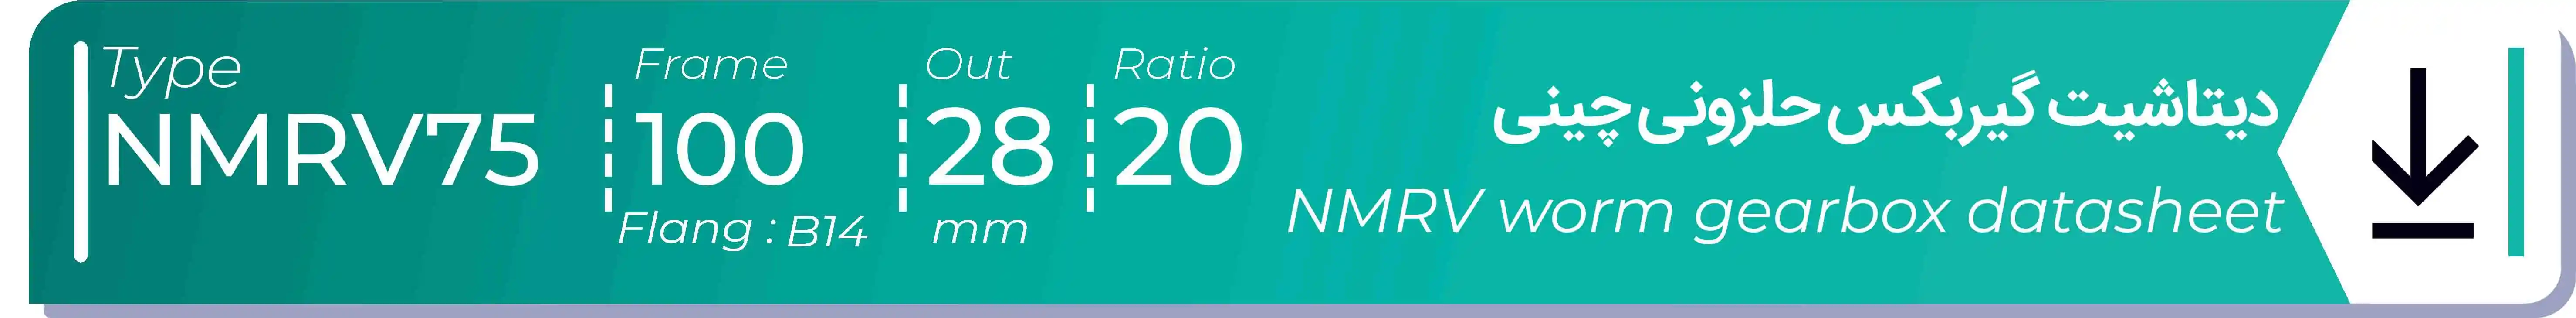  دیتاشیت و مشخصات فنی گیربکس حلزونی چینی   NMRV75  -  با خروجی 28- میلی متر و نسبت20 و فریم 100